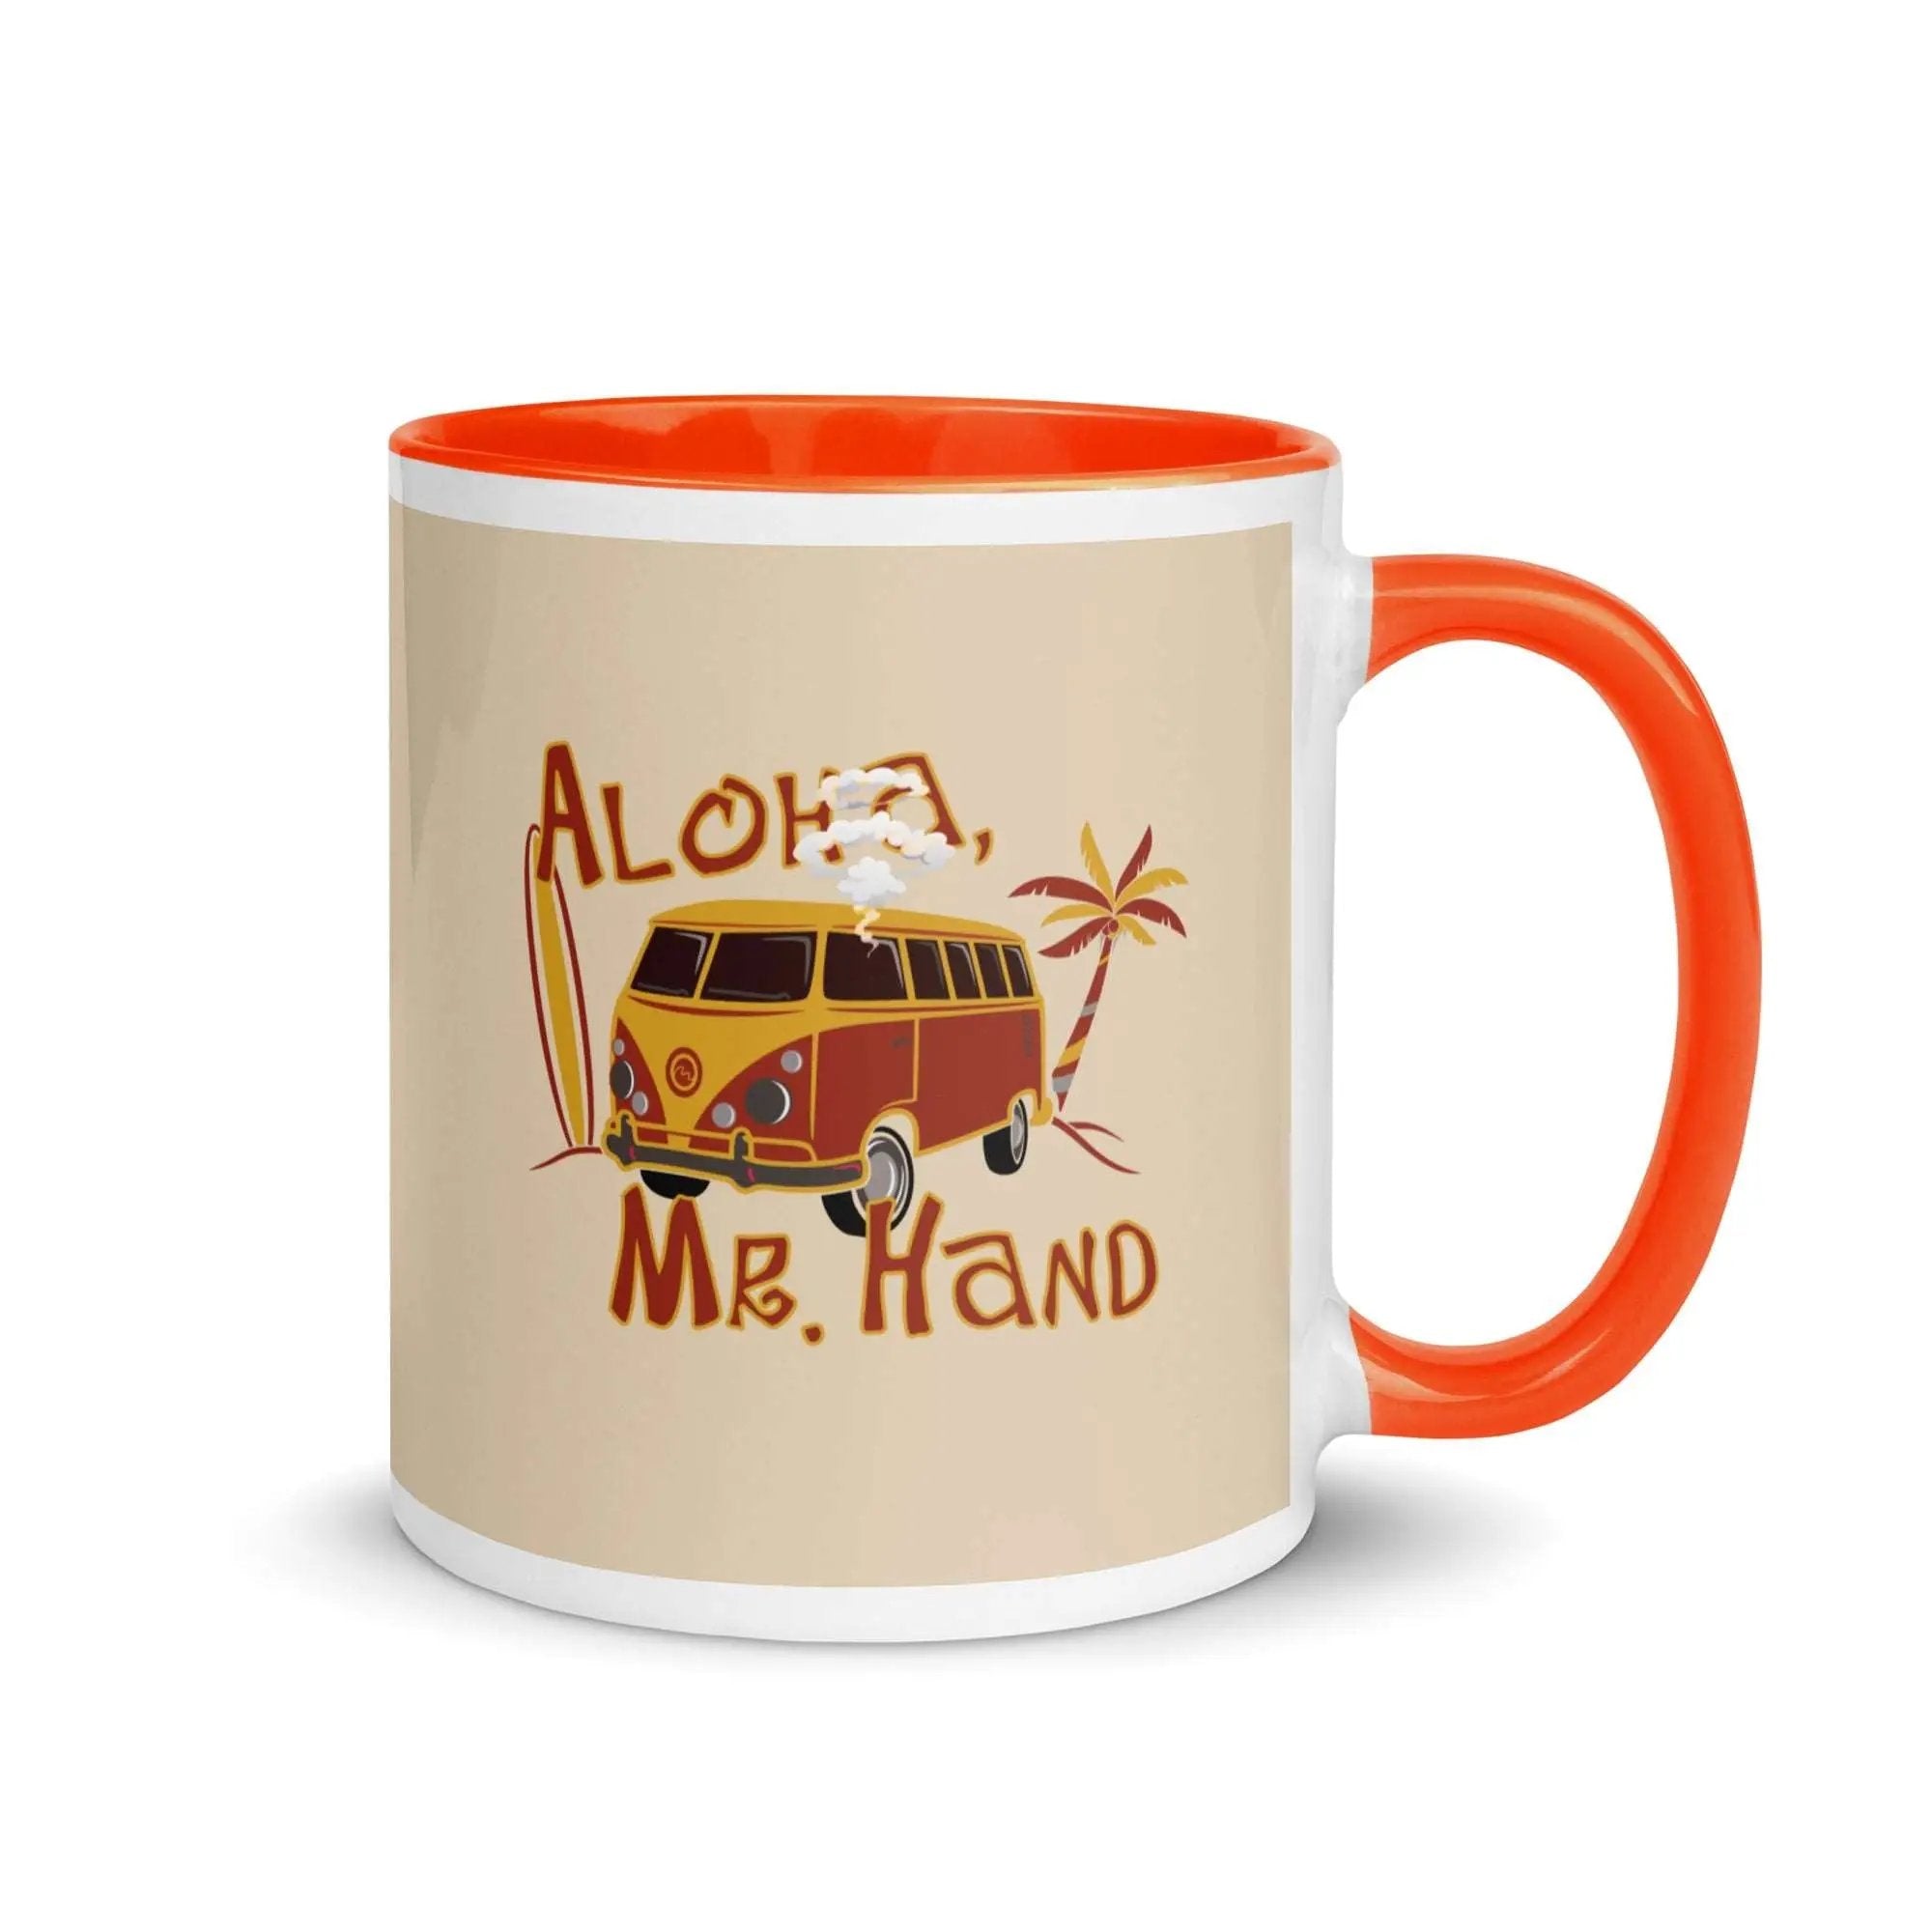 Aloha Mr. Hand! Mug with Color Inside